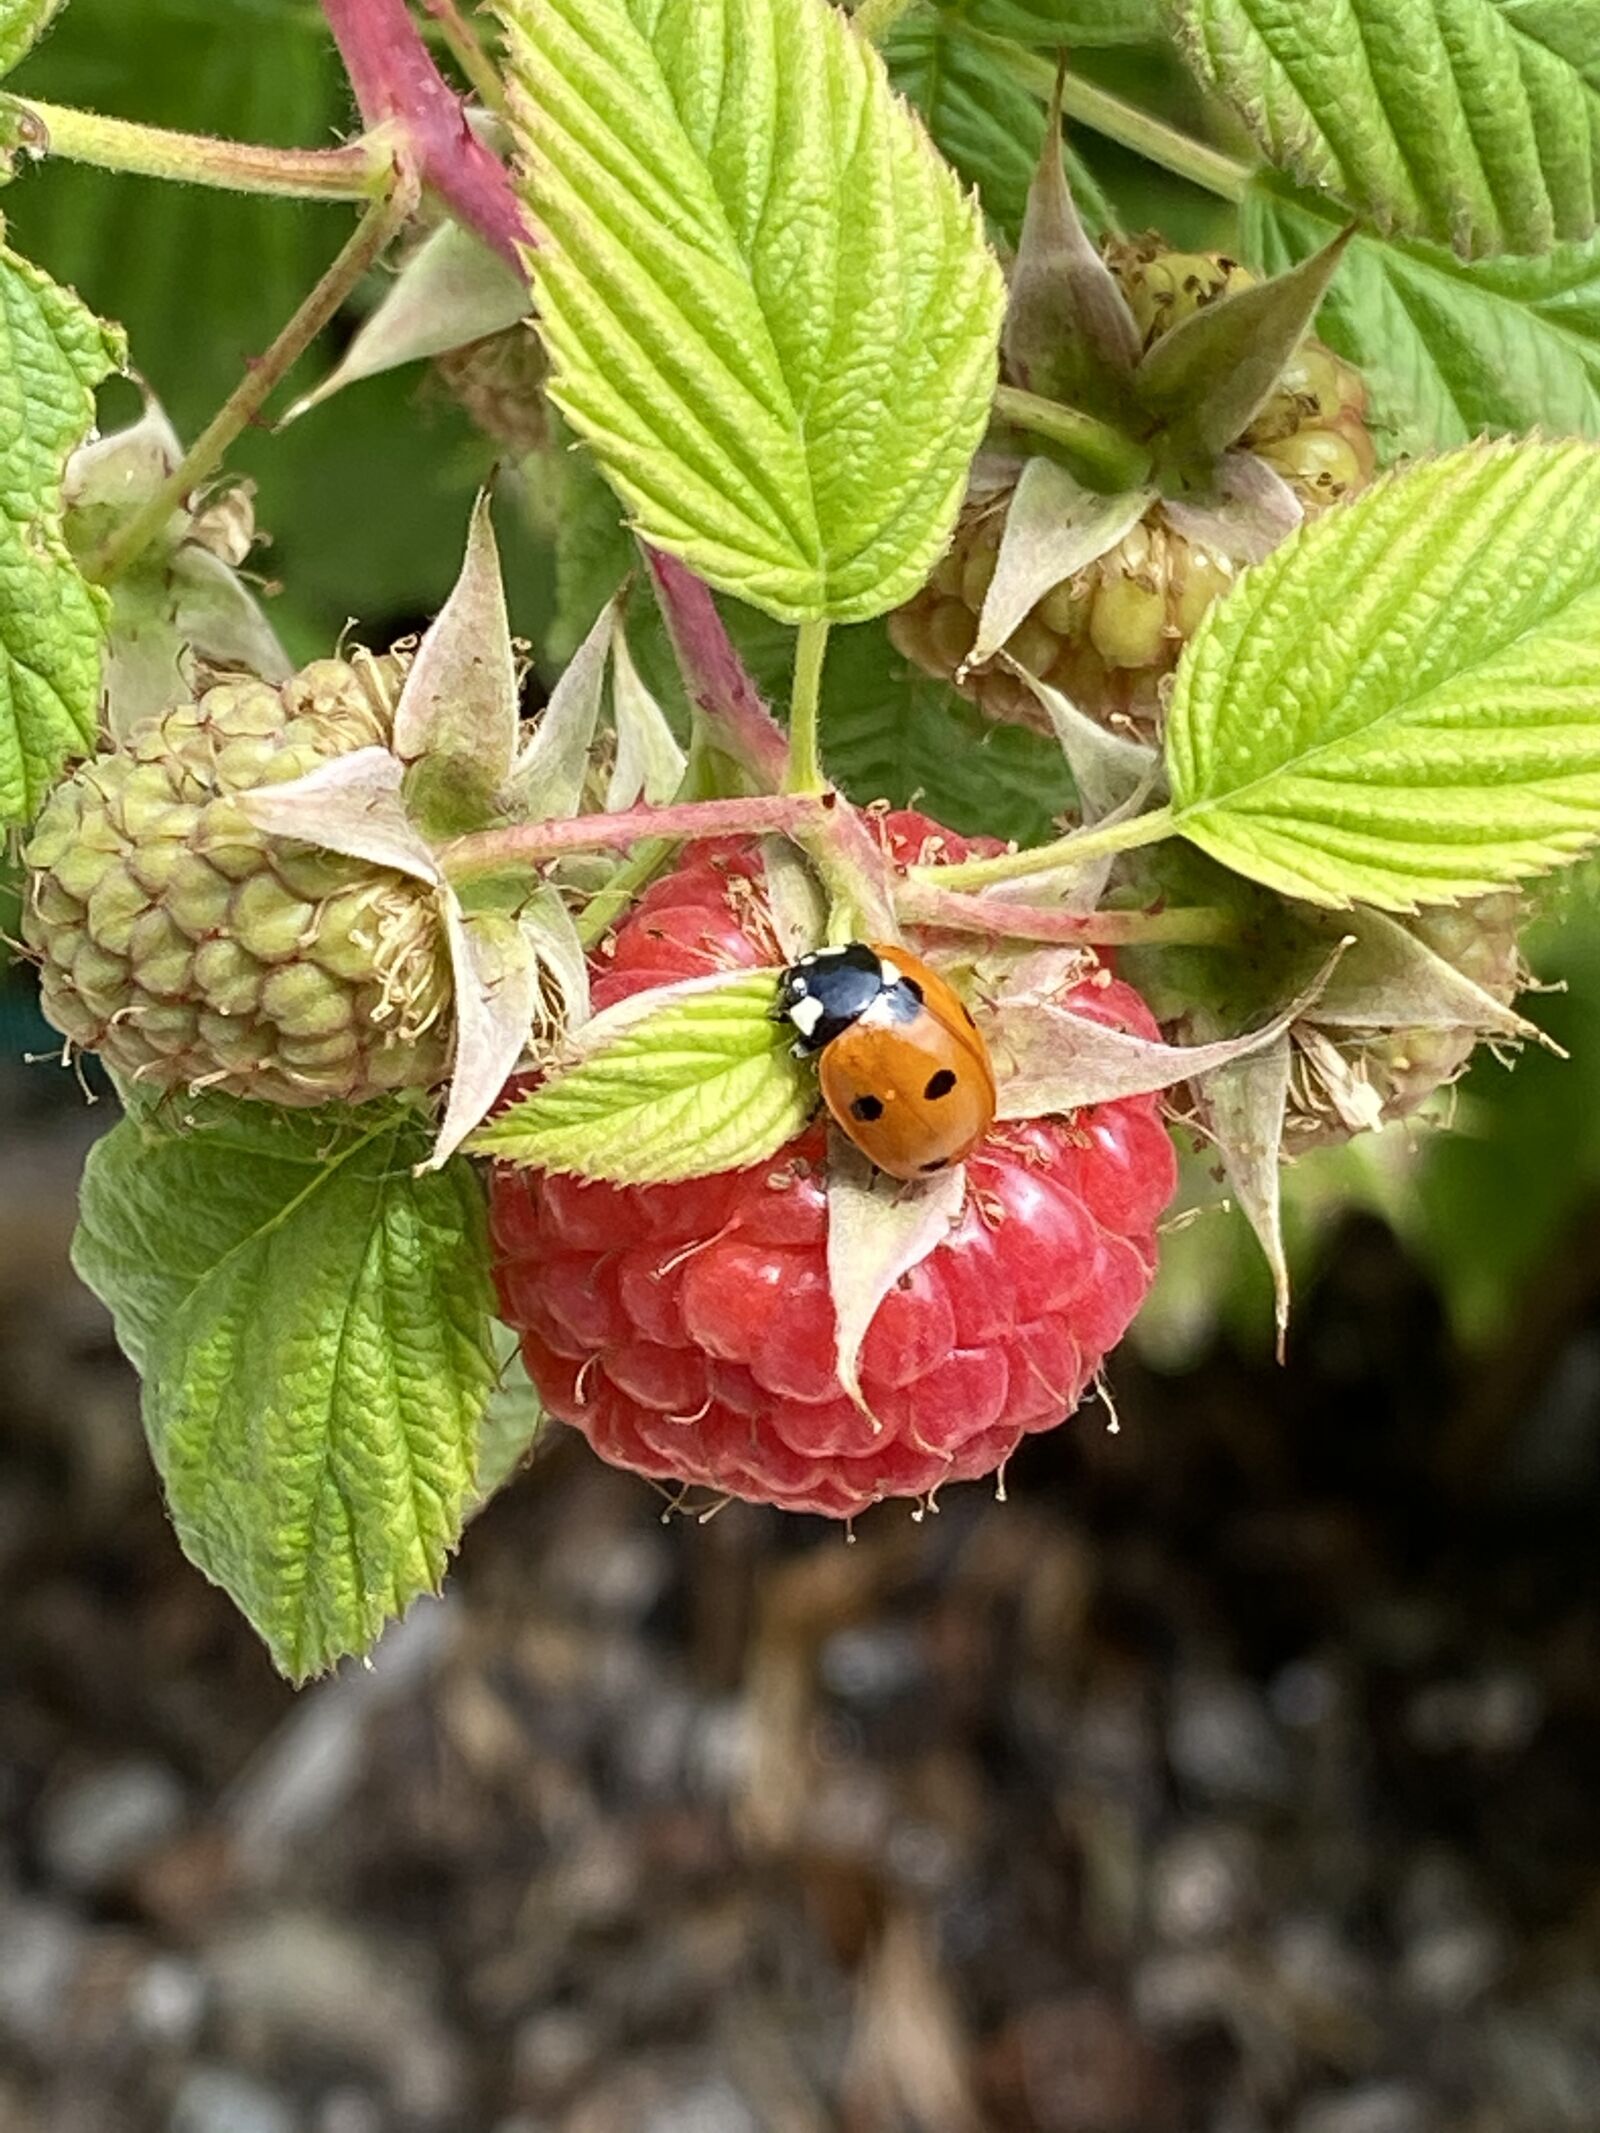 Apple iPhone 11 Pro Max sample photo. Ladybug, raspberry, nature photography